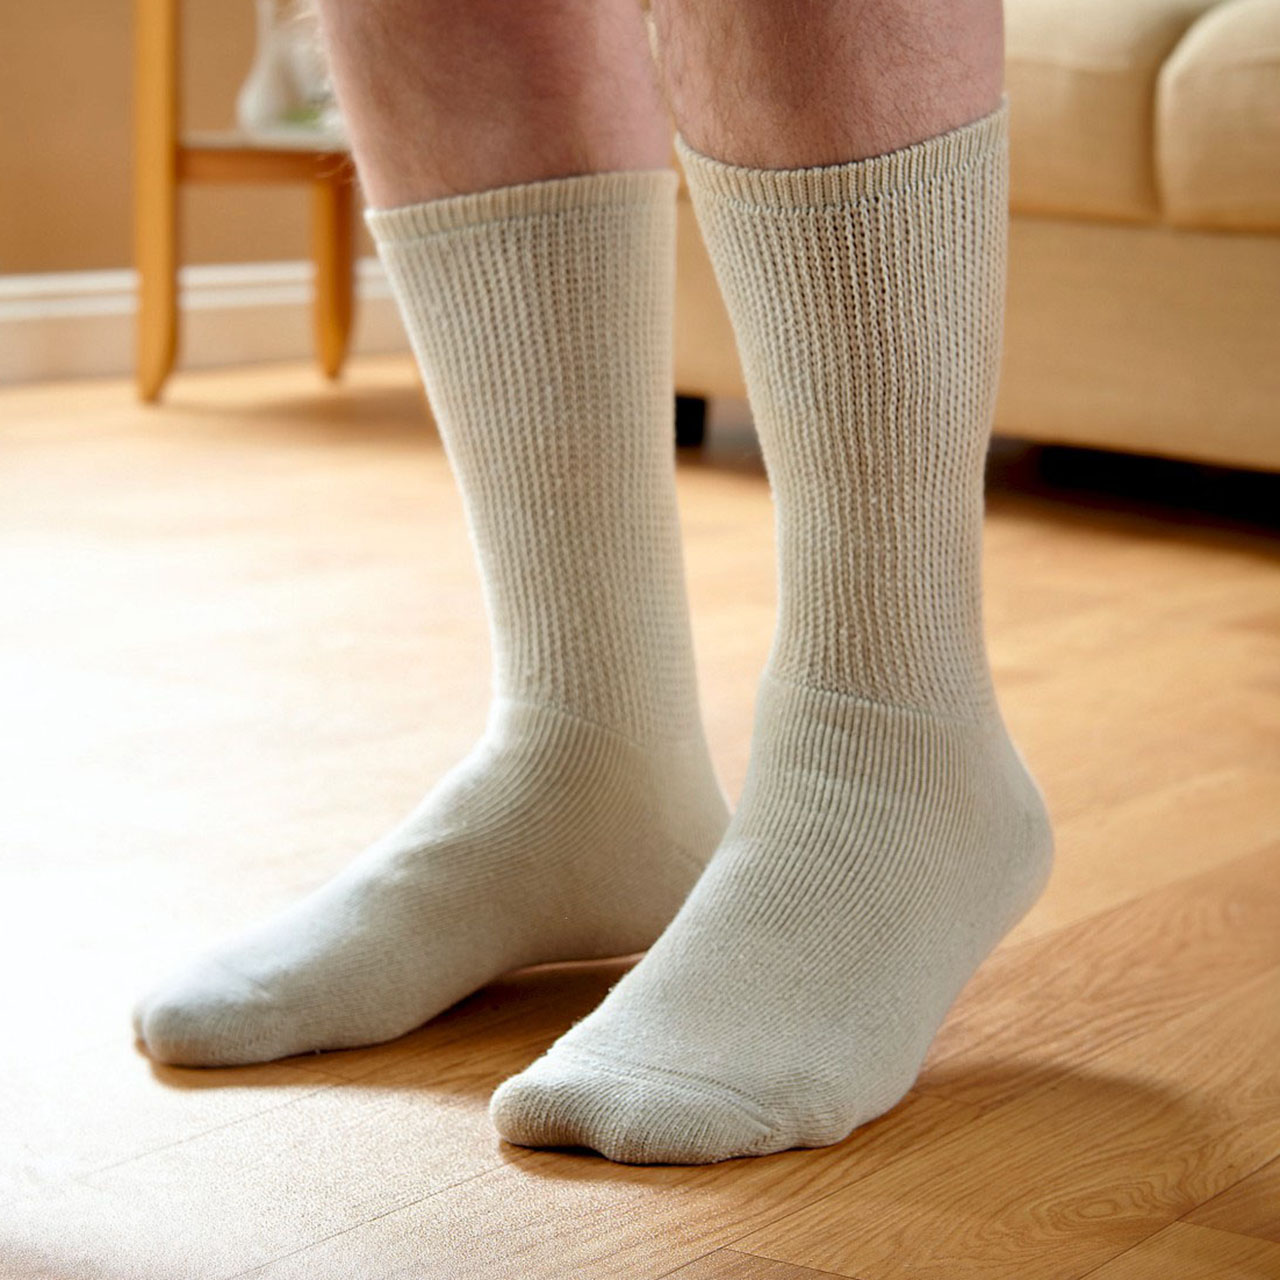 Calf Length Soft Top Diabetic Socks - Pack of 2 pairs